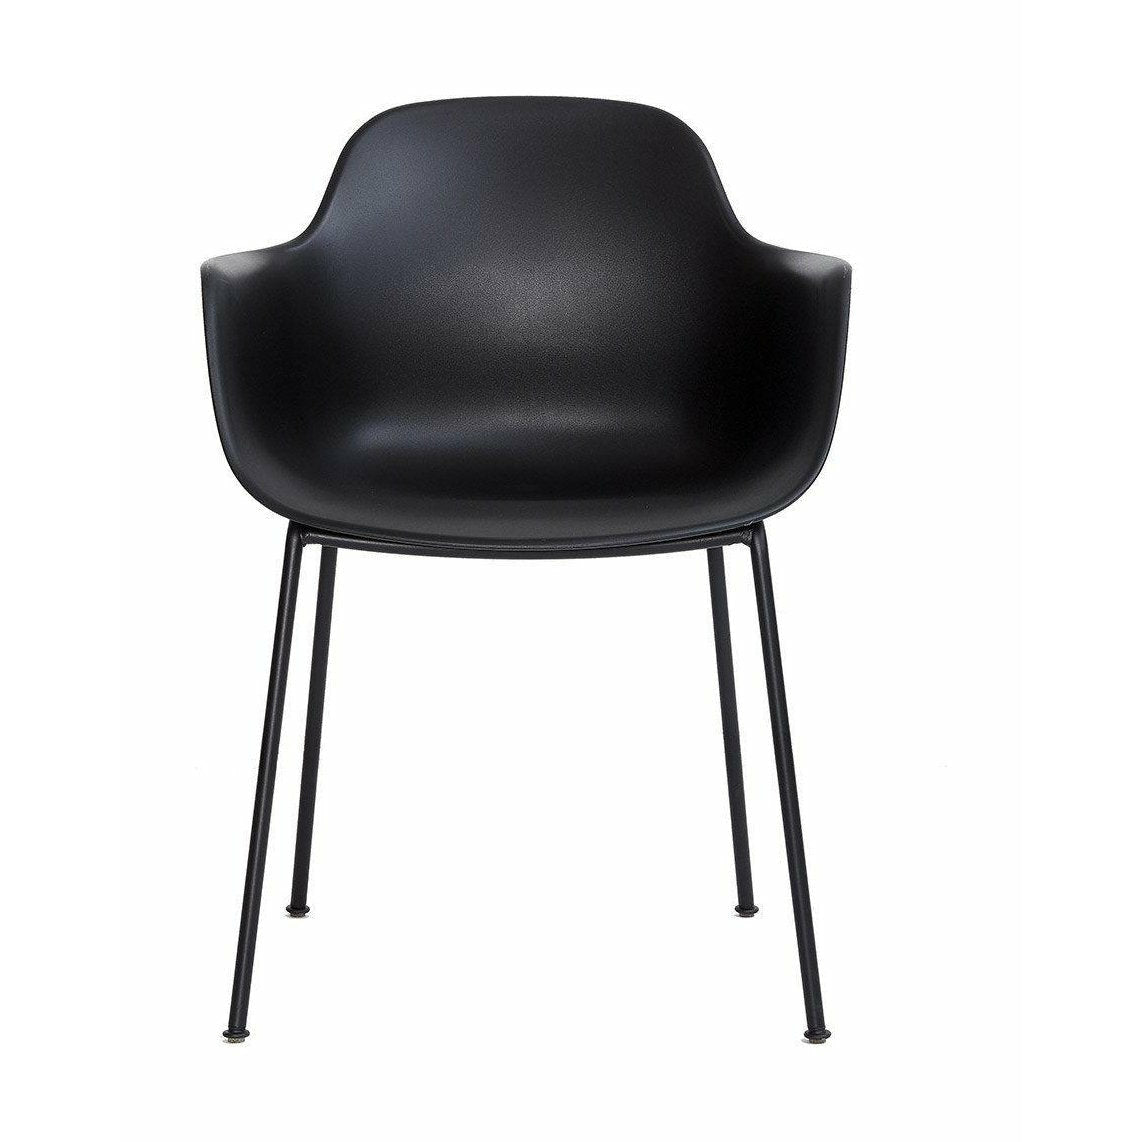 Andersern Furniture Ac3 Chair Black Frame, Black Seat